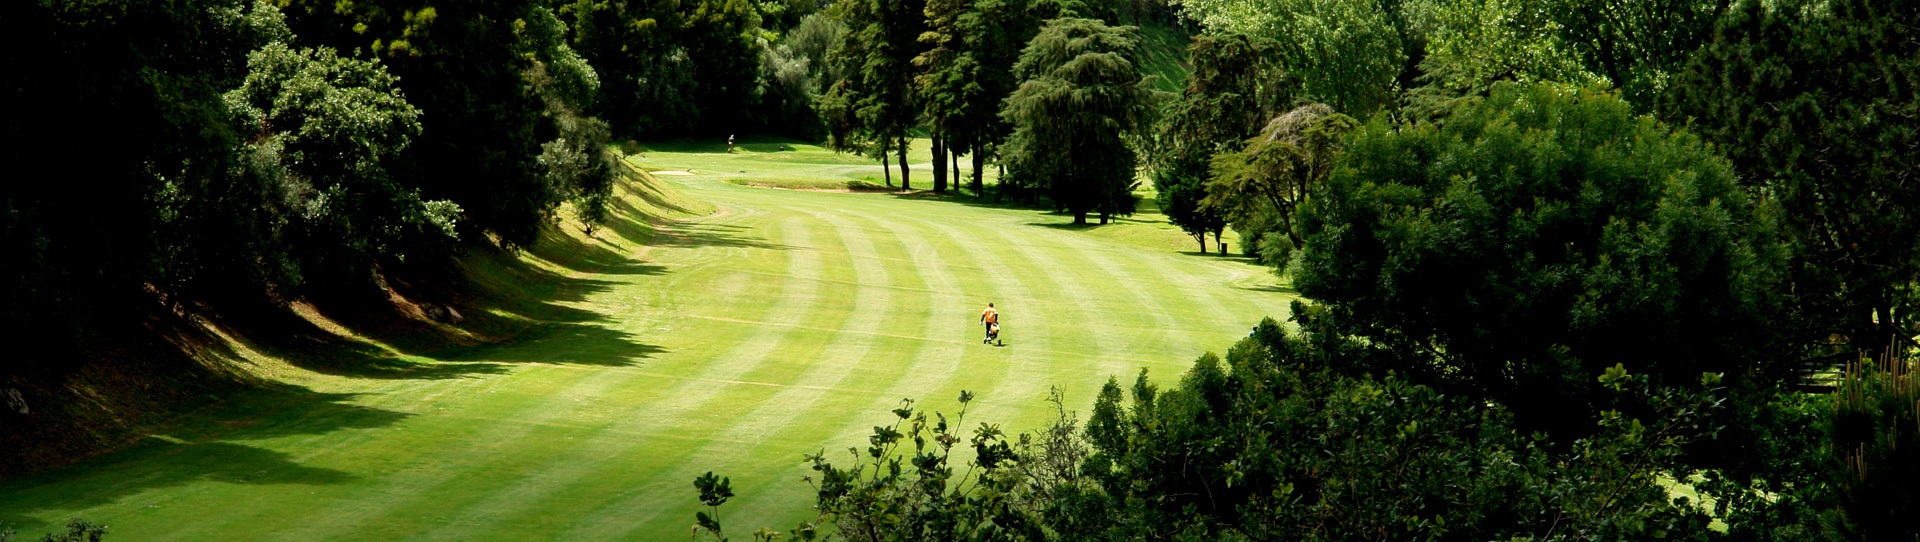 Portugal golf holidays - Cascais / Estoril Golf Package - Photo 3